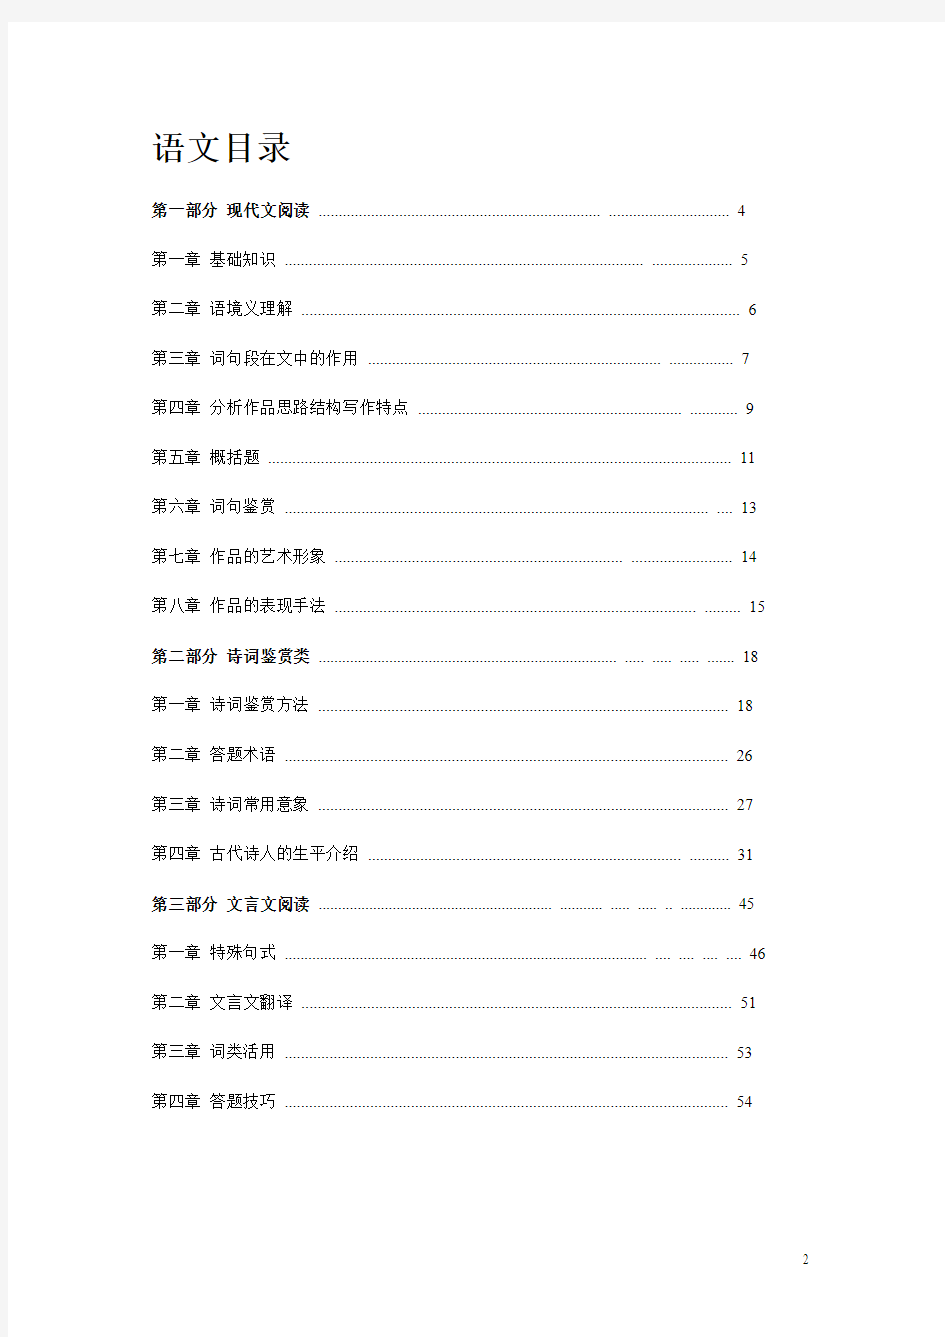 2015上海高考复习资料完全整理合集(word版,共59页)